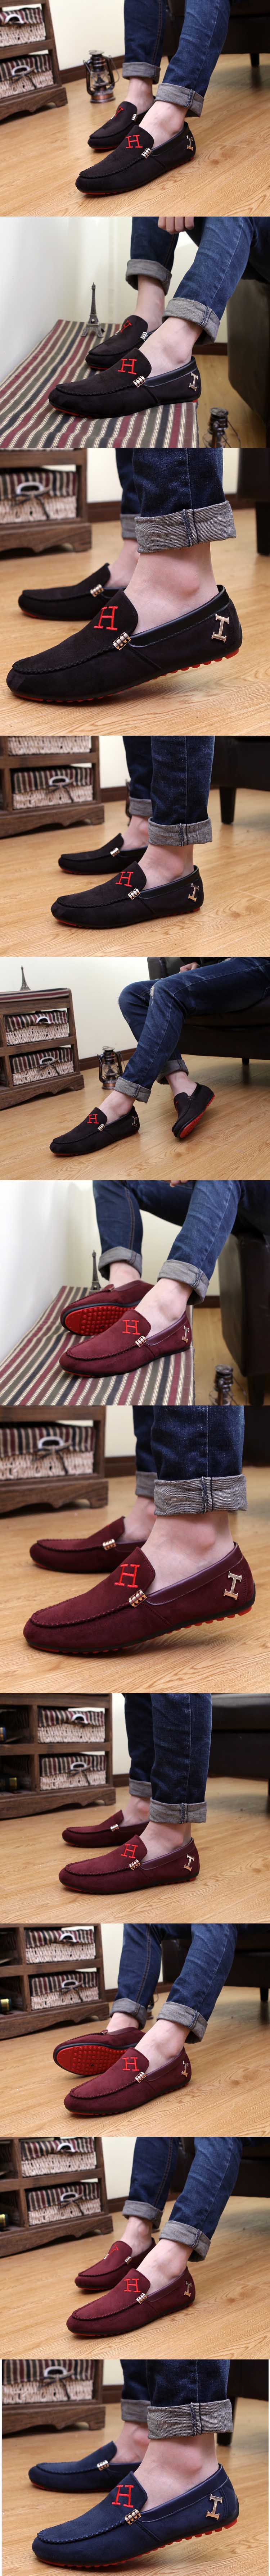 jual sepatu flat pria model terbaru , terbuat dari bahan kulit sintetis berkualitas yang cocok untuk anda yang senang dengan gaya casual, temukan koleksi sepatu flat pria terlengkap hanya di store.pakaianfashionpria.com